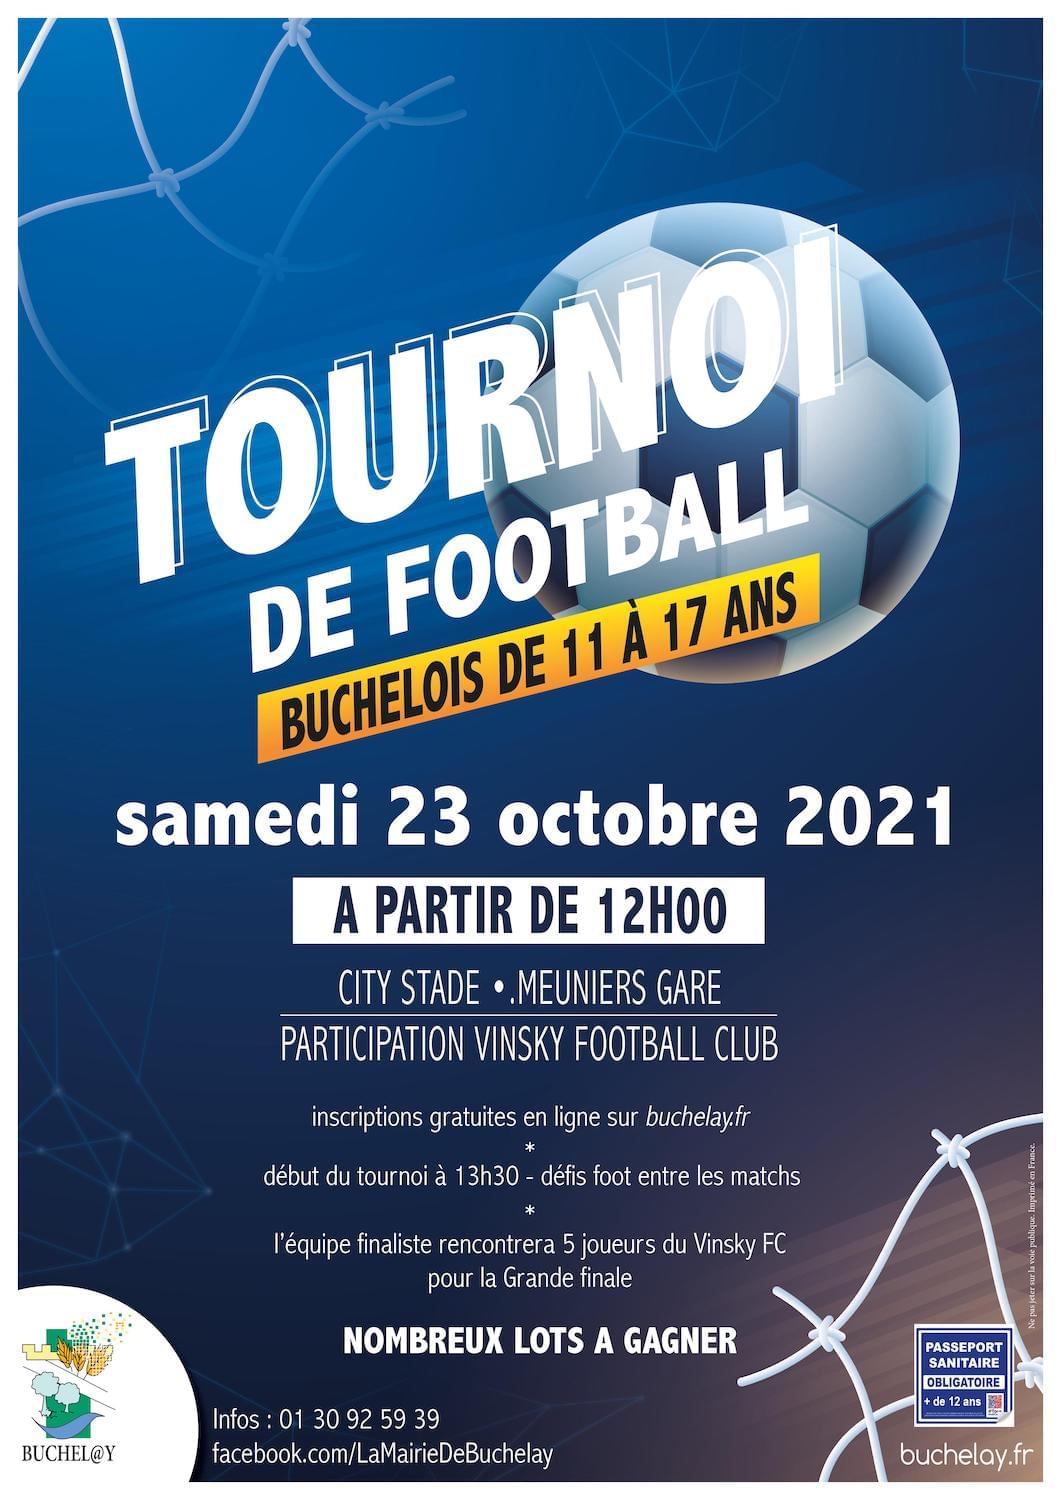 Tournoi de football destiné aux habitants de Buchelay, samedi 23 octobre, au City Stade